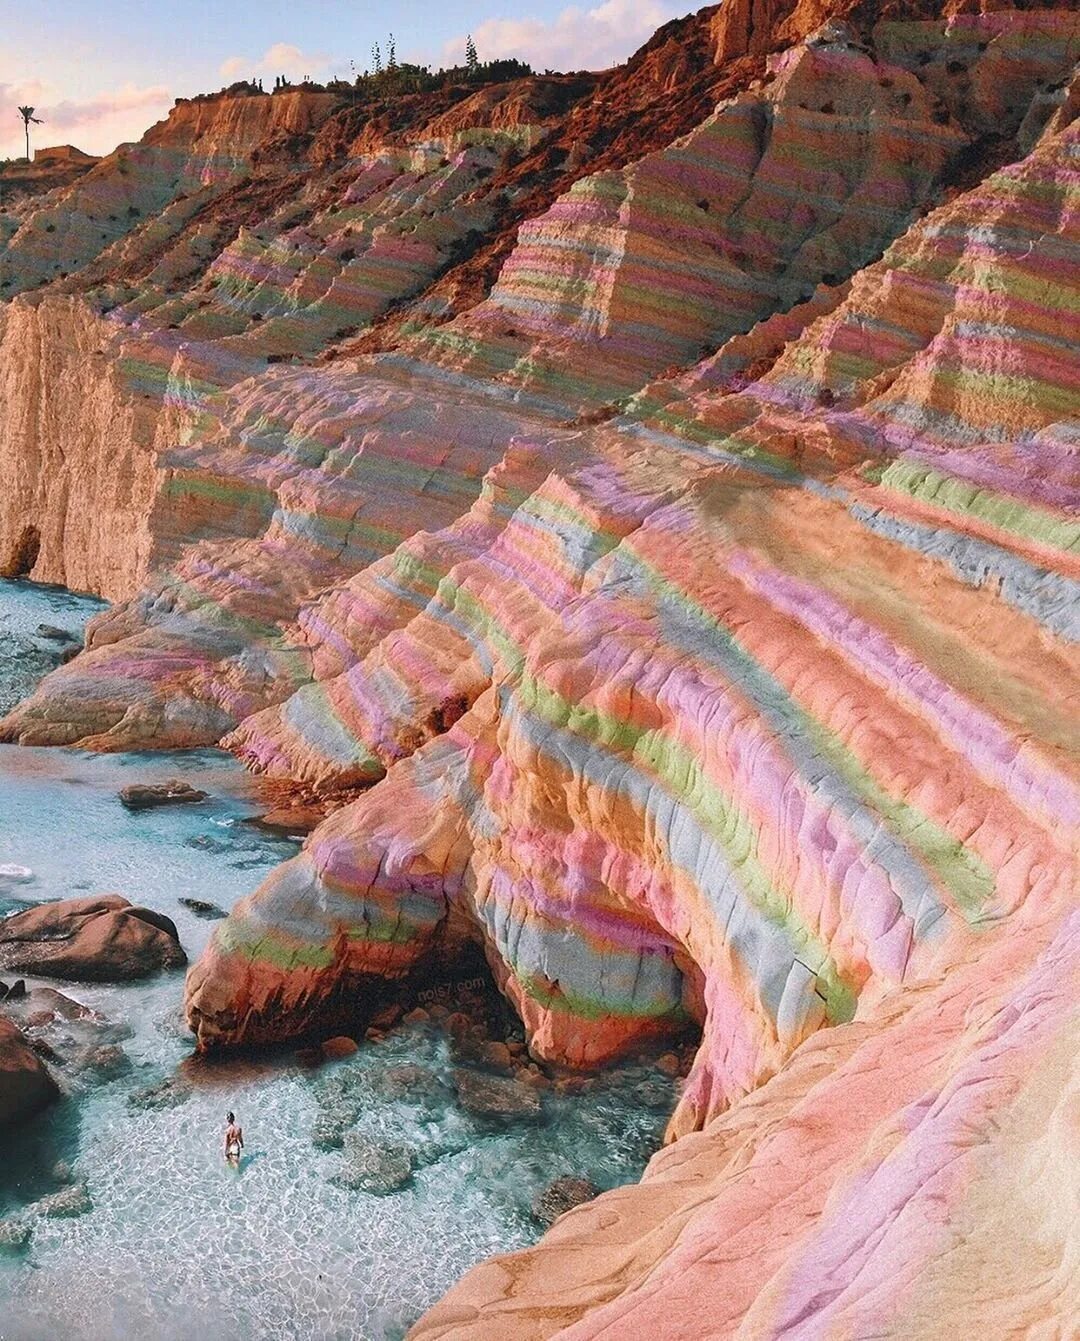 Название невероятное. Цветные скалы Чжанъе Данксиа. Цветные скалы Чжанъе Данксиа в провинции Ганьсу, Китай. Радужные горы Патагония. Радужные горы Чжанъе Данься.